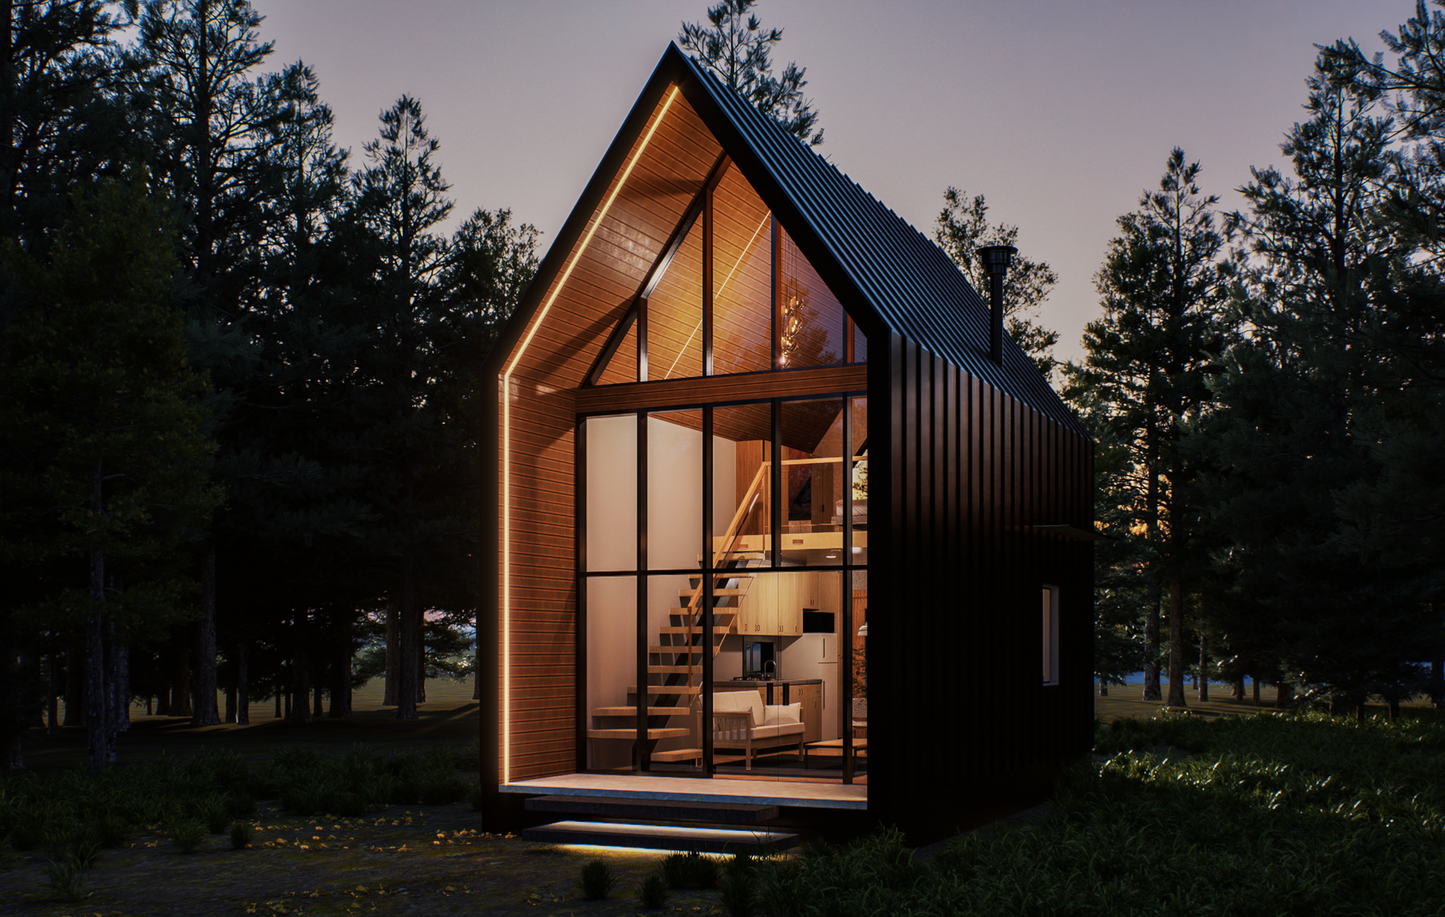 Mirari Modern Cabin